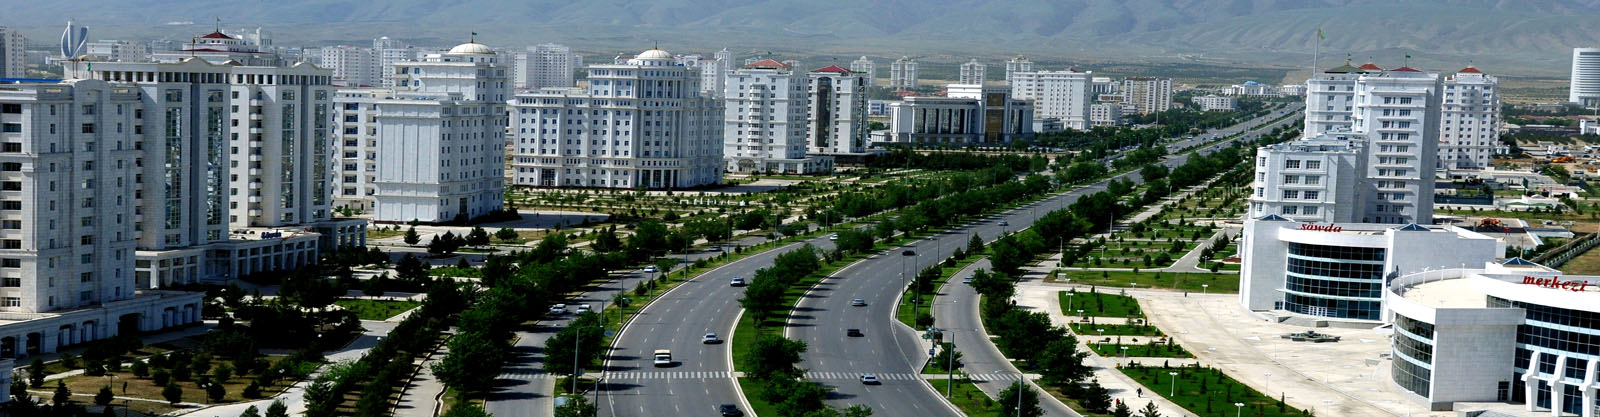 turkmenistan-and-uzbekistan-group-tour-banner-dest